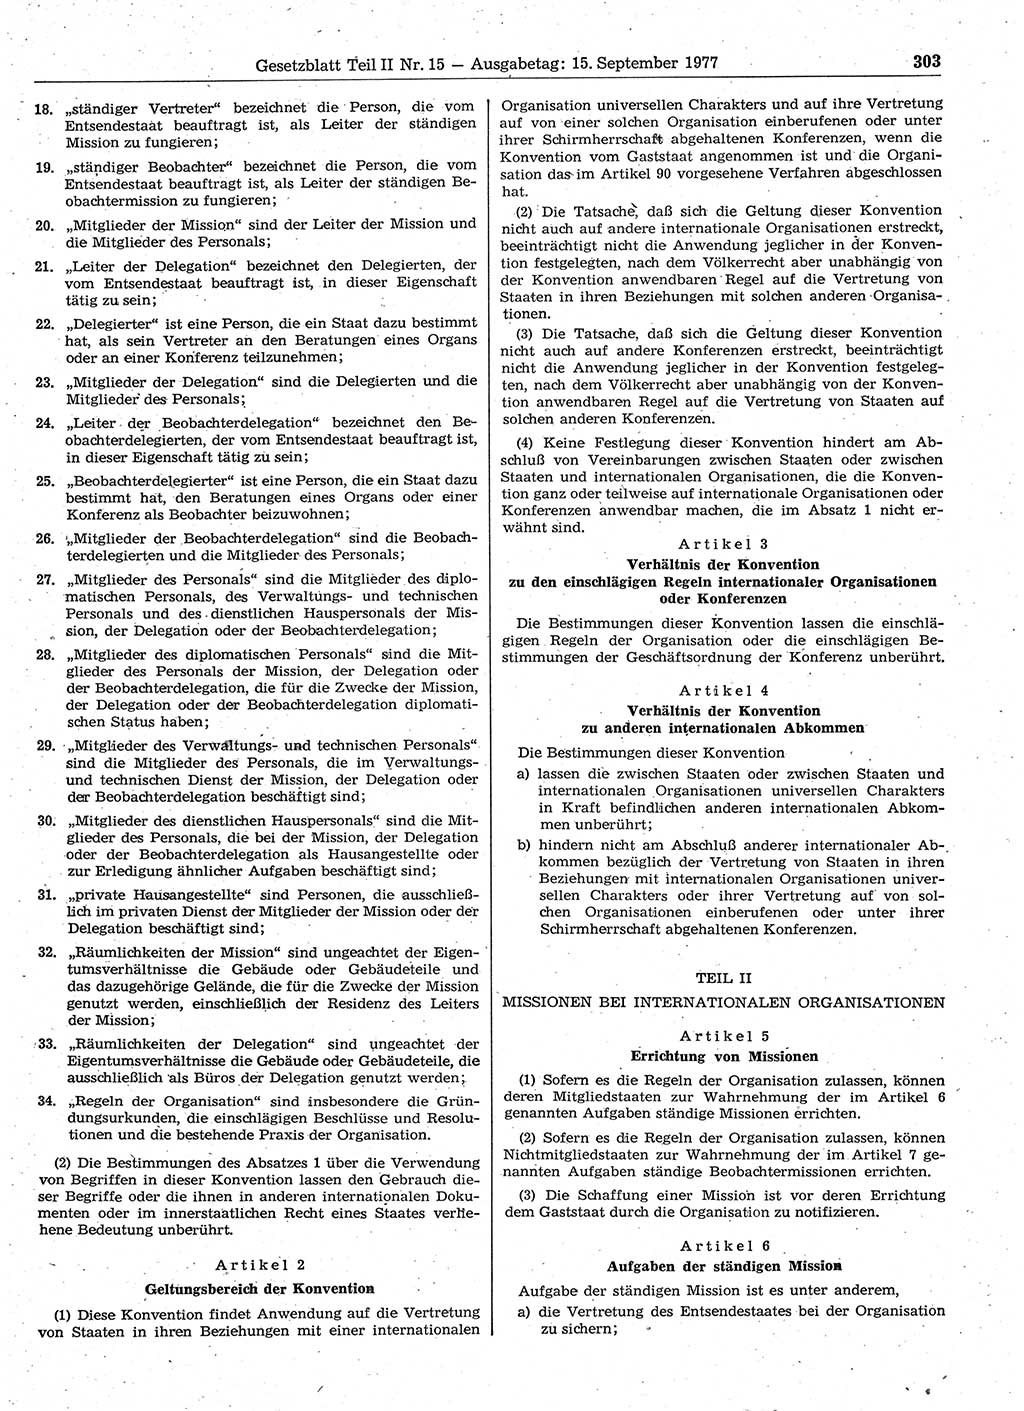 Gesetzblatt (GBl.) der Deutschen Demokratischen Republik (DDR) Teil ⅠⅠ 1977, Seite 303 (GBl. DDR ⅠⅠ 1977, S. 303)